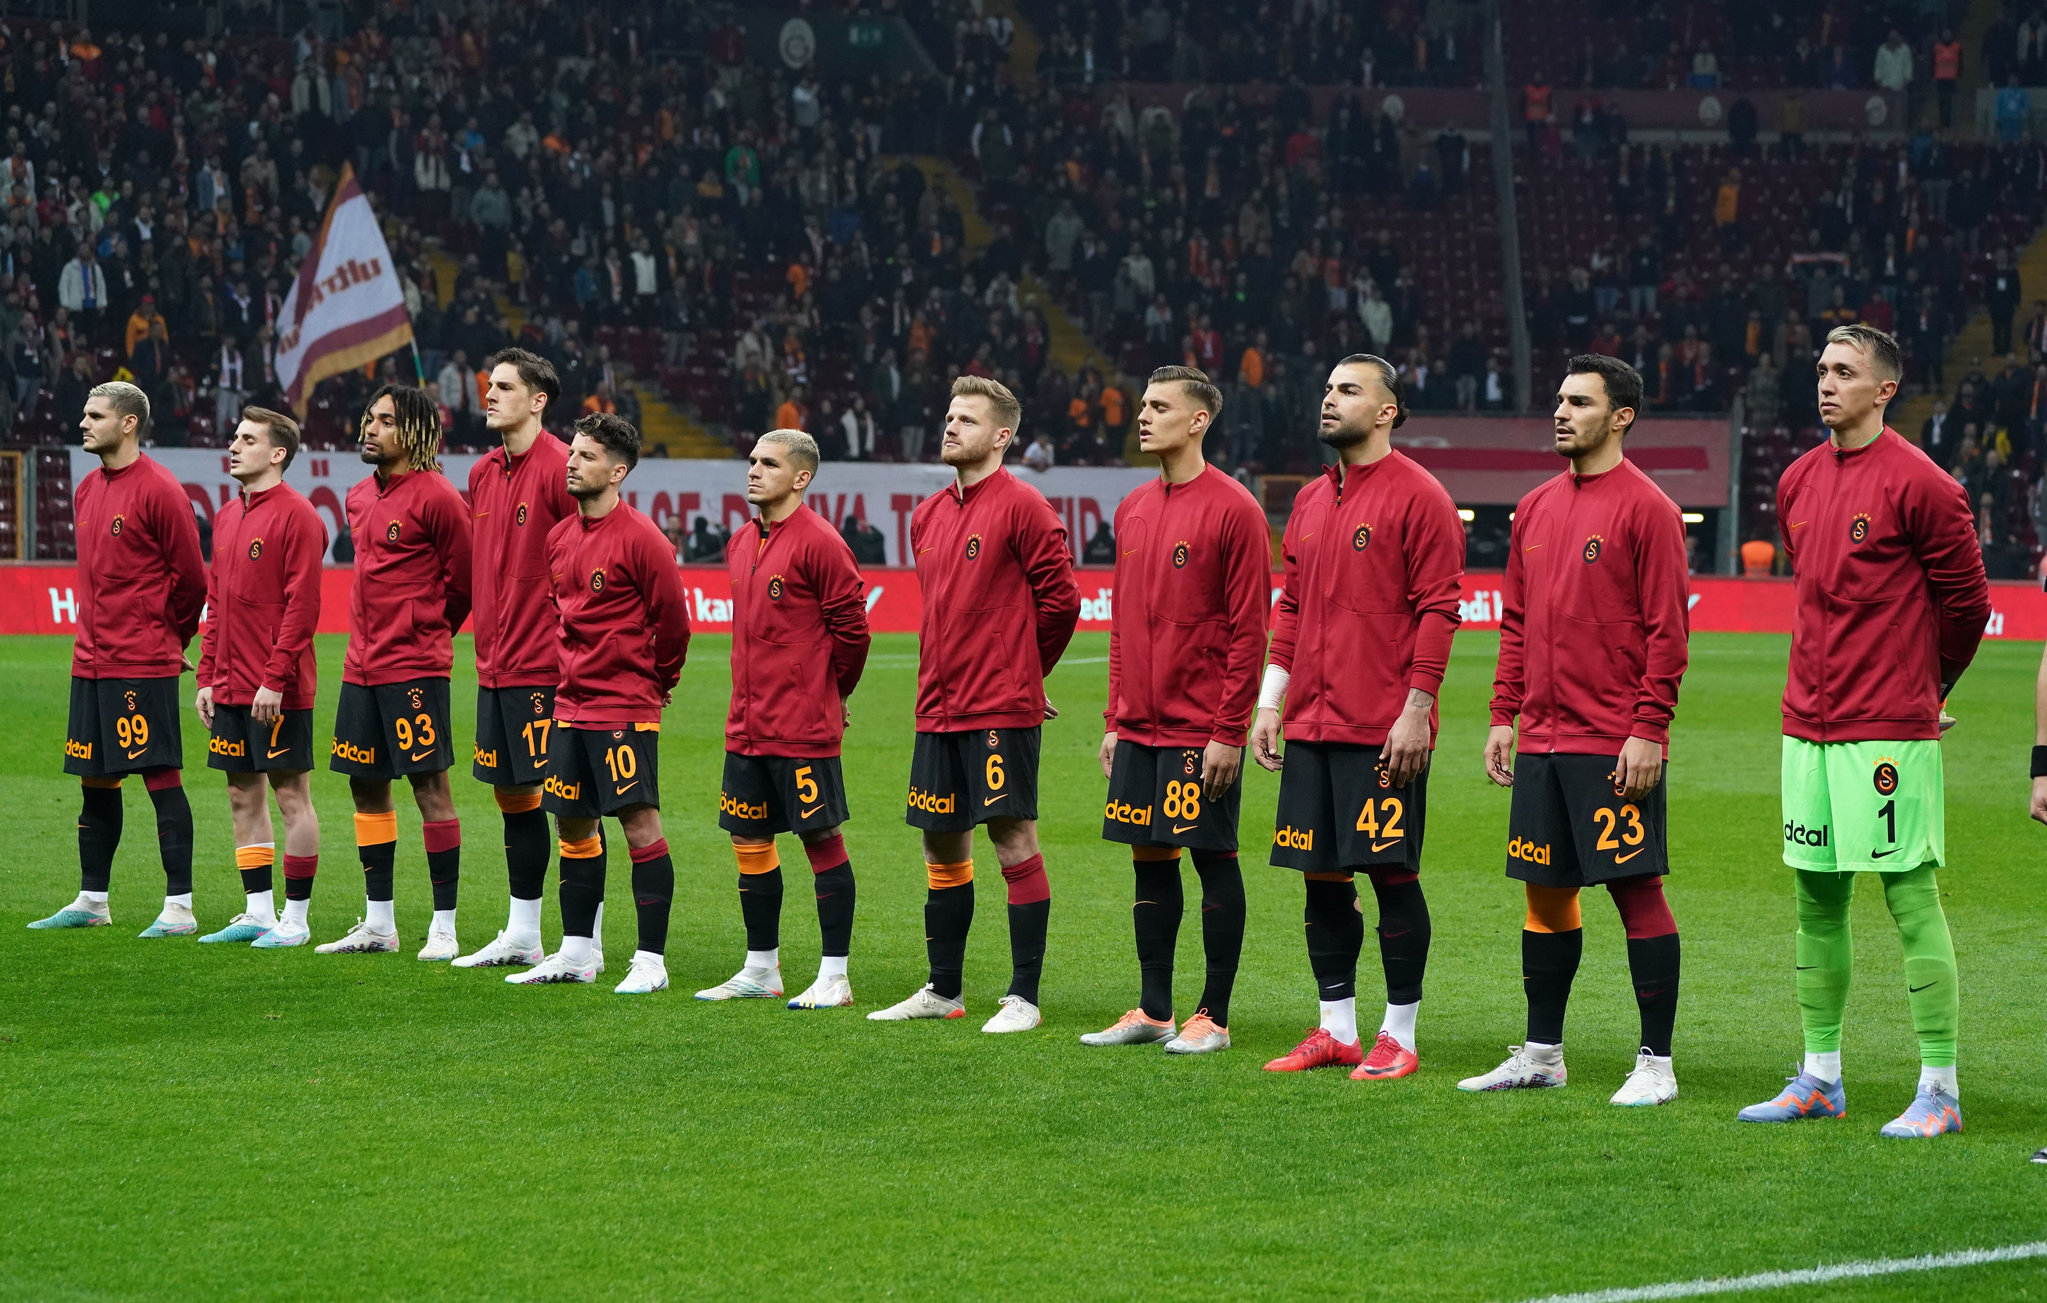 Galatasaray’a Liverpool’dan transfer! 40 milyon Euro ödenmişti şimdi Aslan oluyor